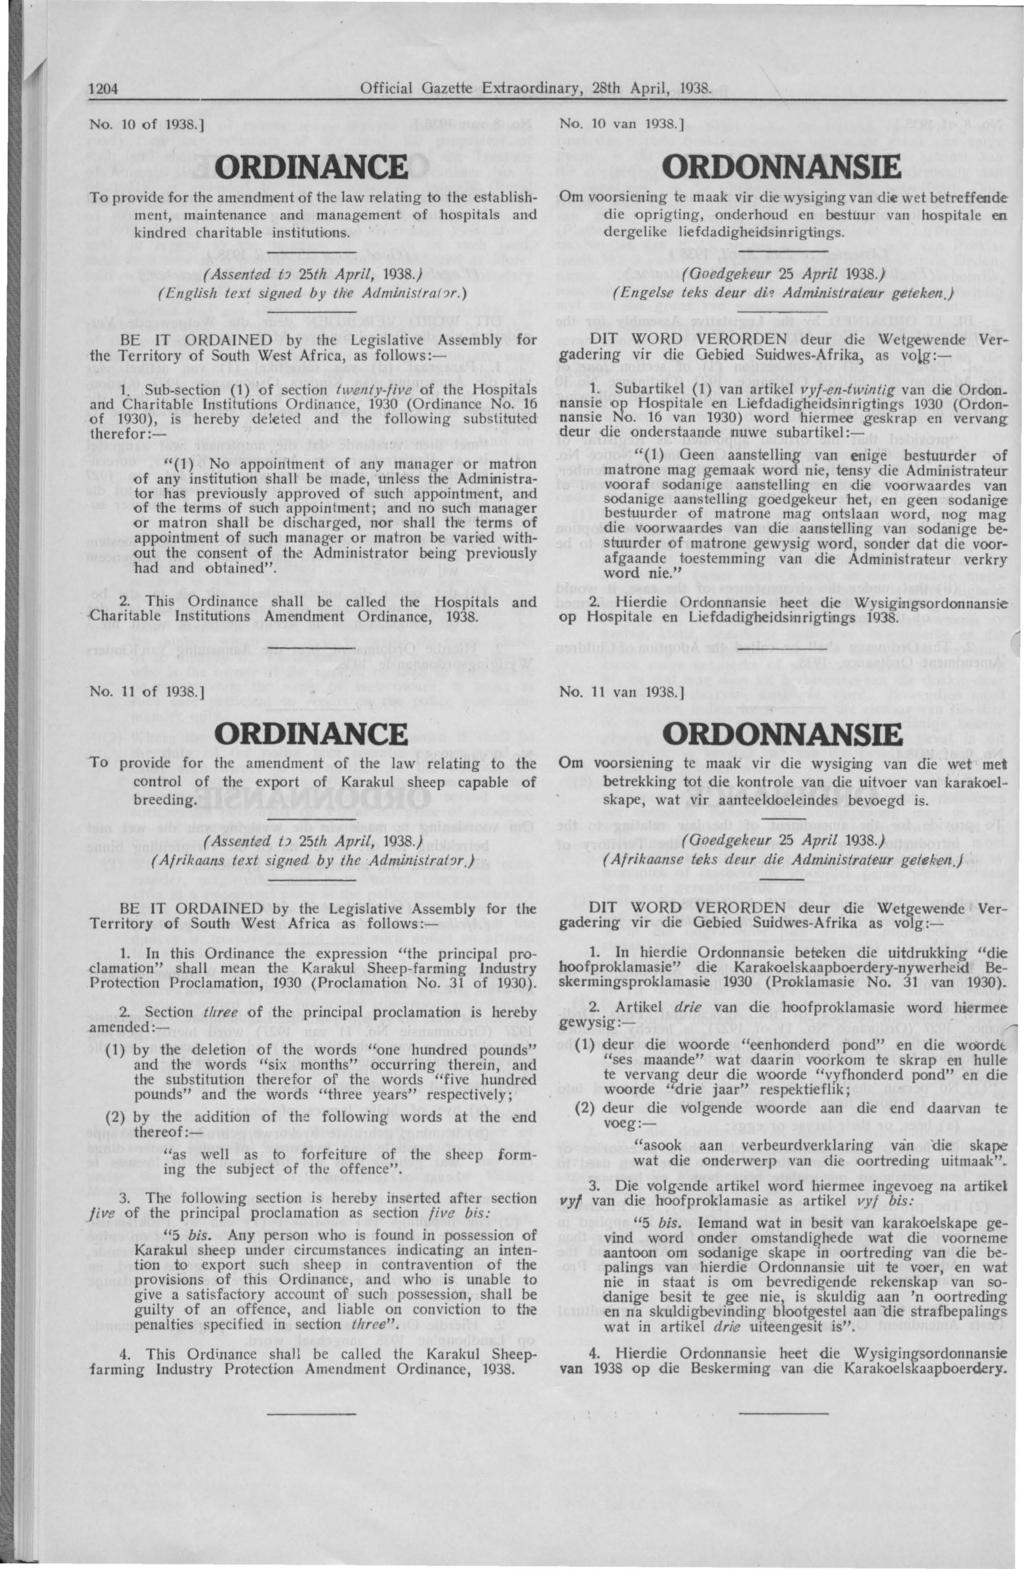 1204 Official Gazette Extraordinary, 28th April, 1938. No. 10 of 1938.